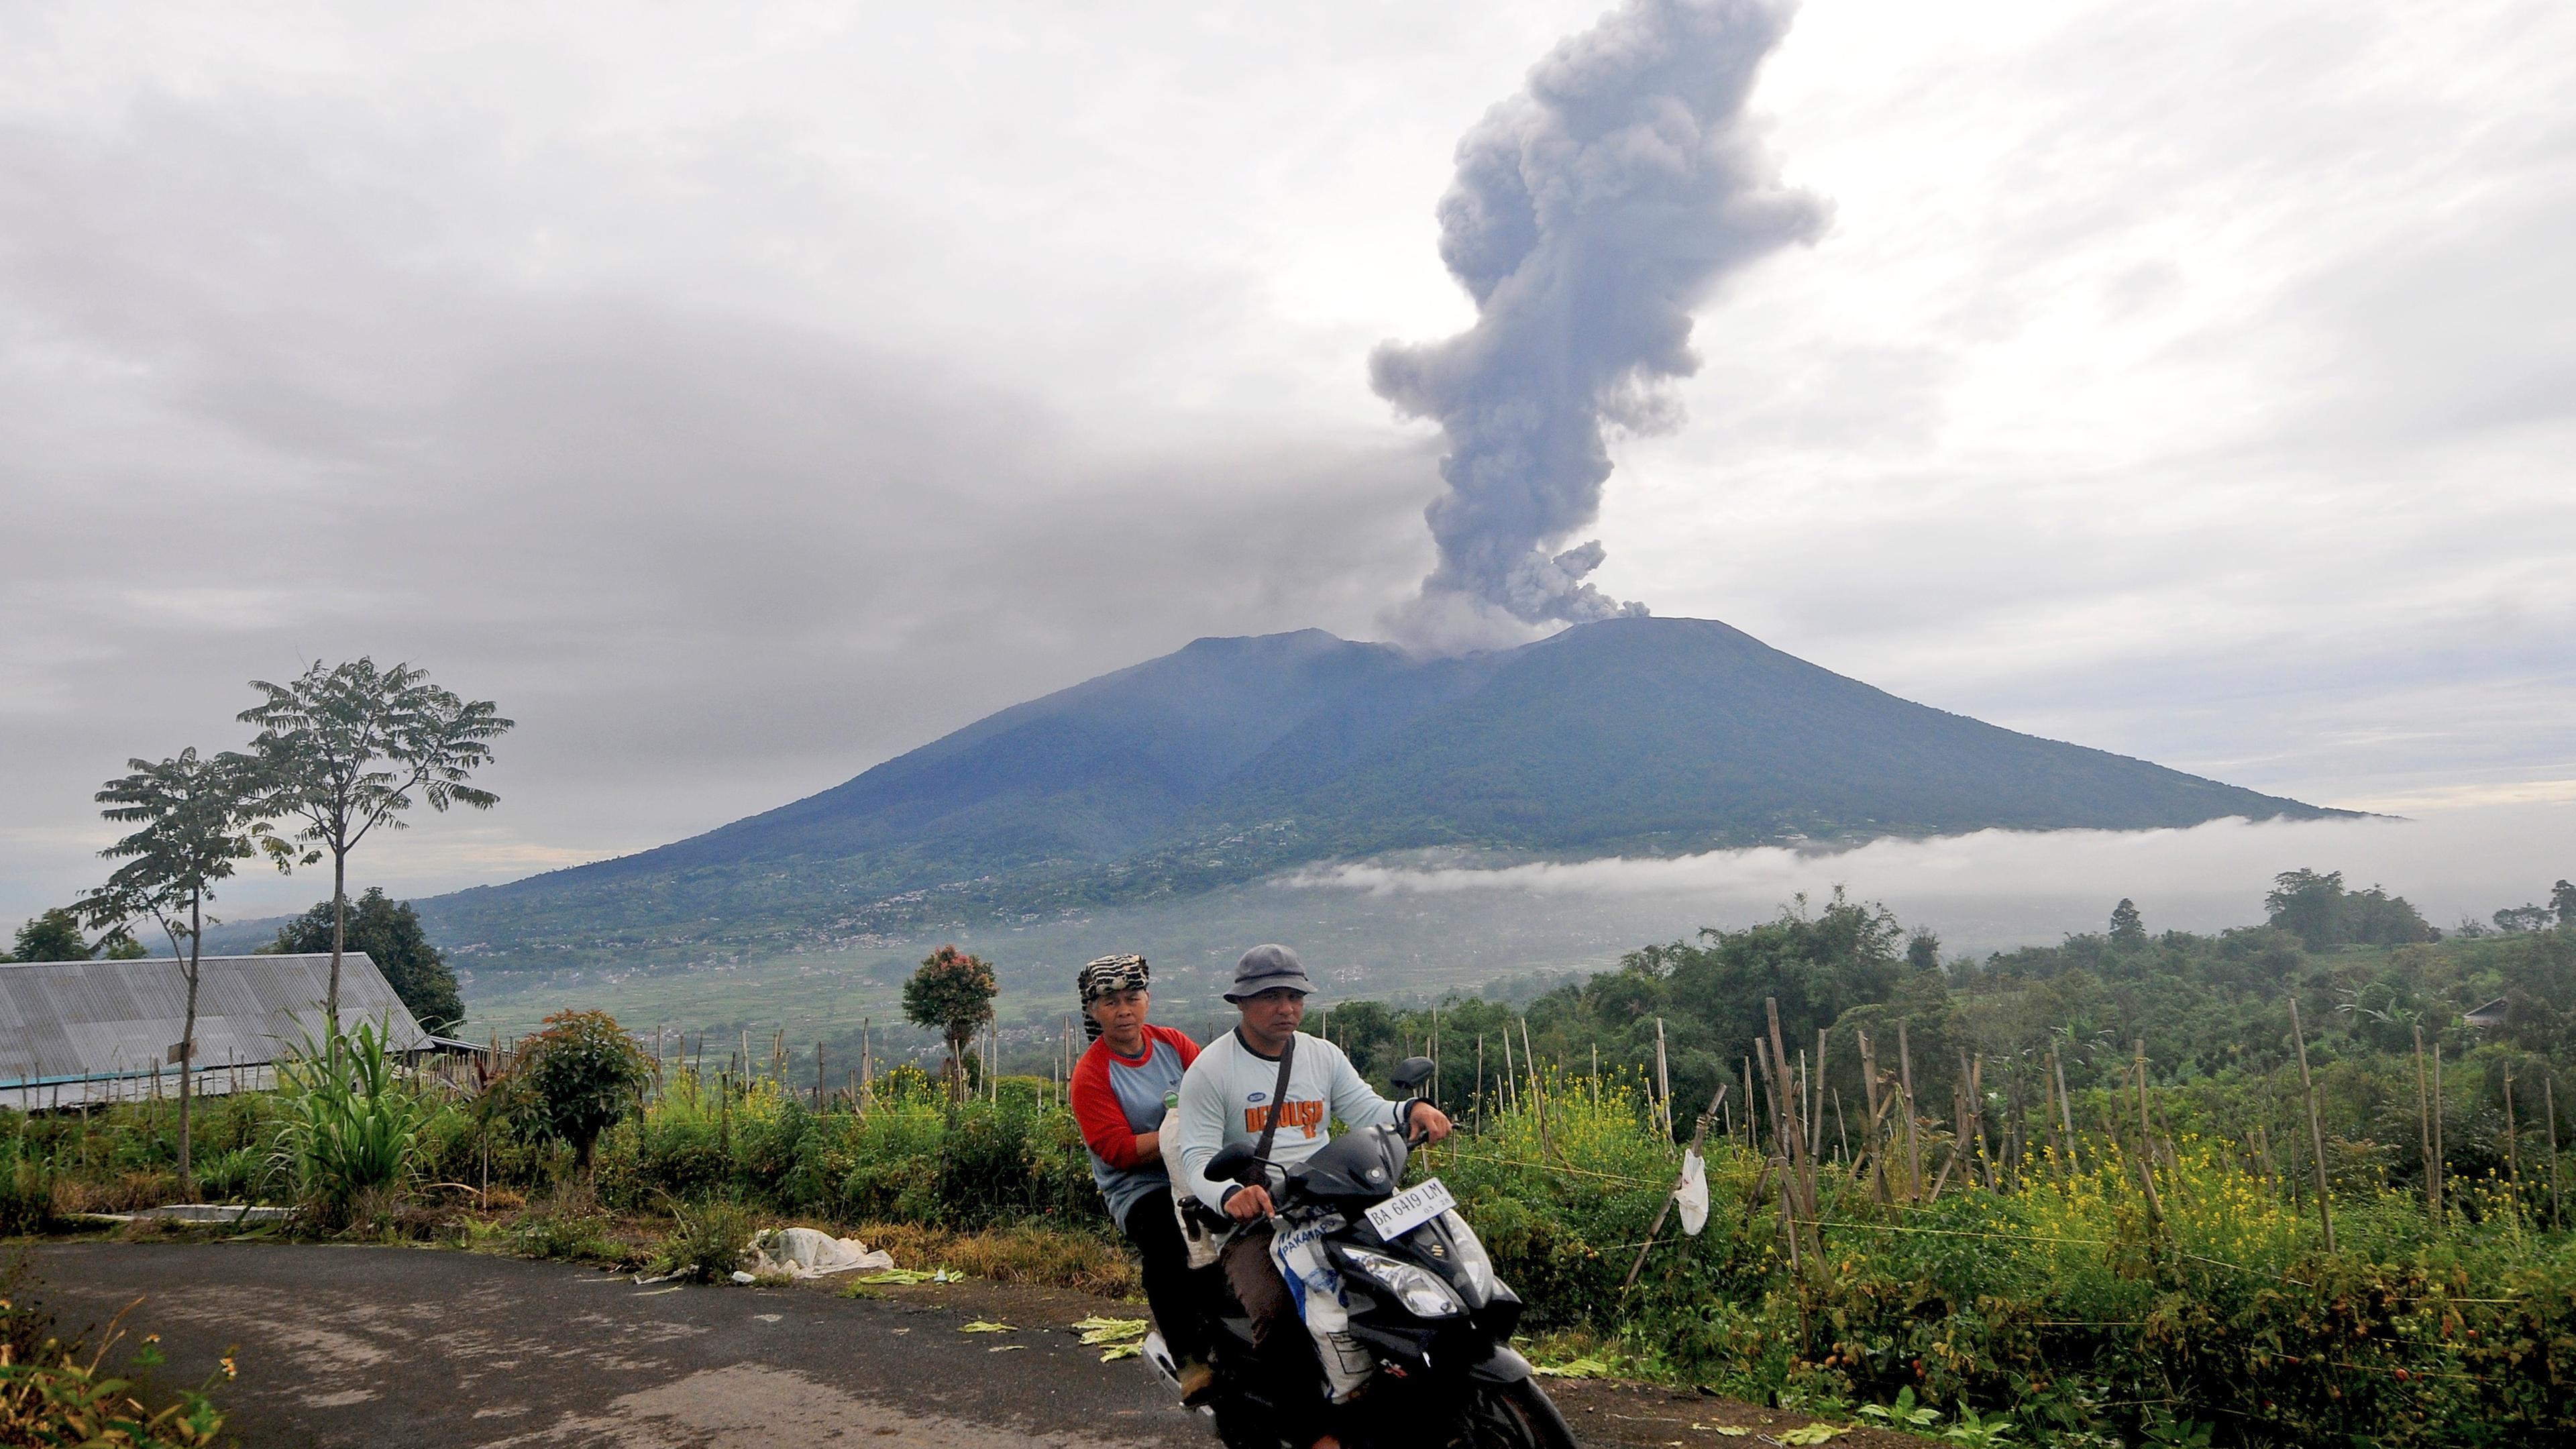 Zwei Menschen fahren auf einem Mofa weg, im Hintergrund sieht man den Vulkan Marapi mit einer großen Rauchwolke.